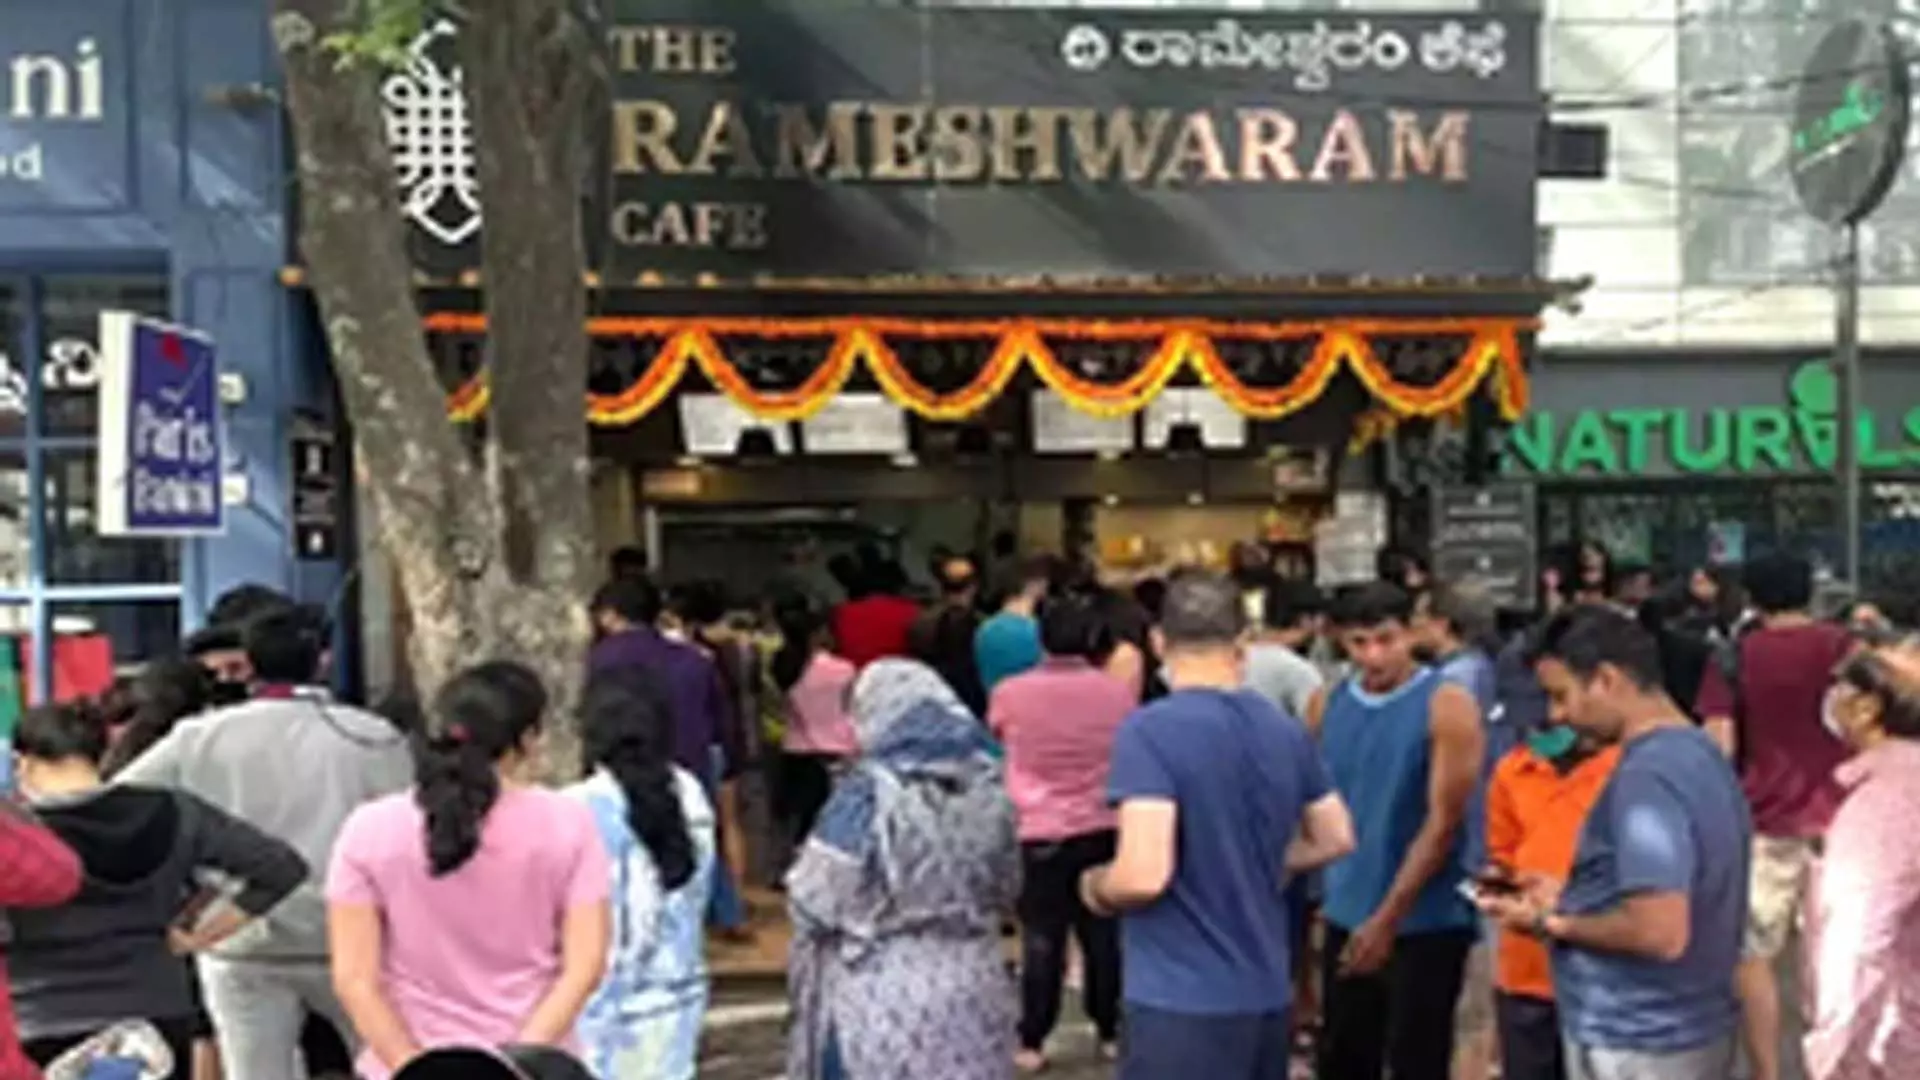 बेंगलुरु, रामेश्वरम कैफे ब्लास्ट मामले एनआईए मास्टरमाइंड समेत दो आरोपियों को गिरफ्तार किया